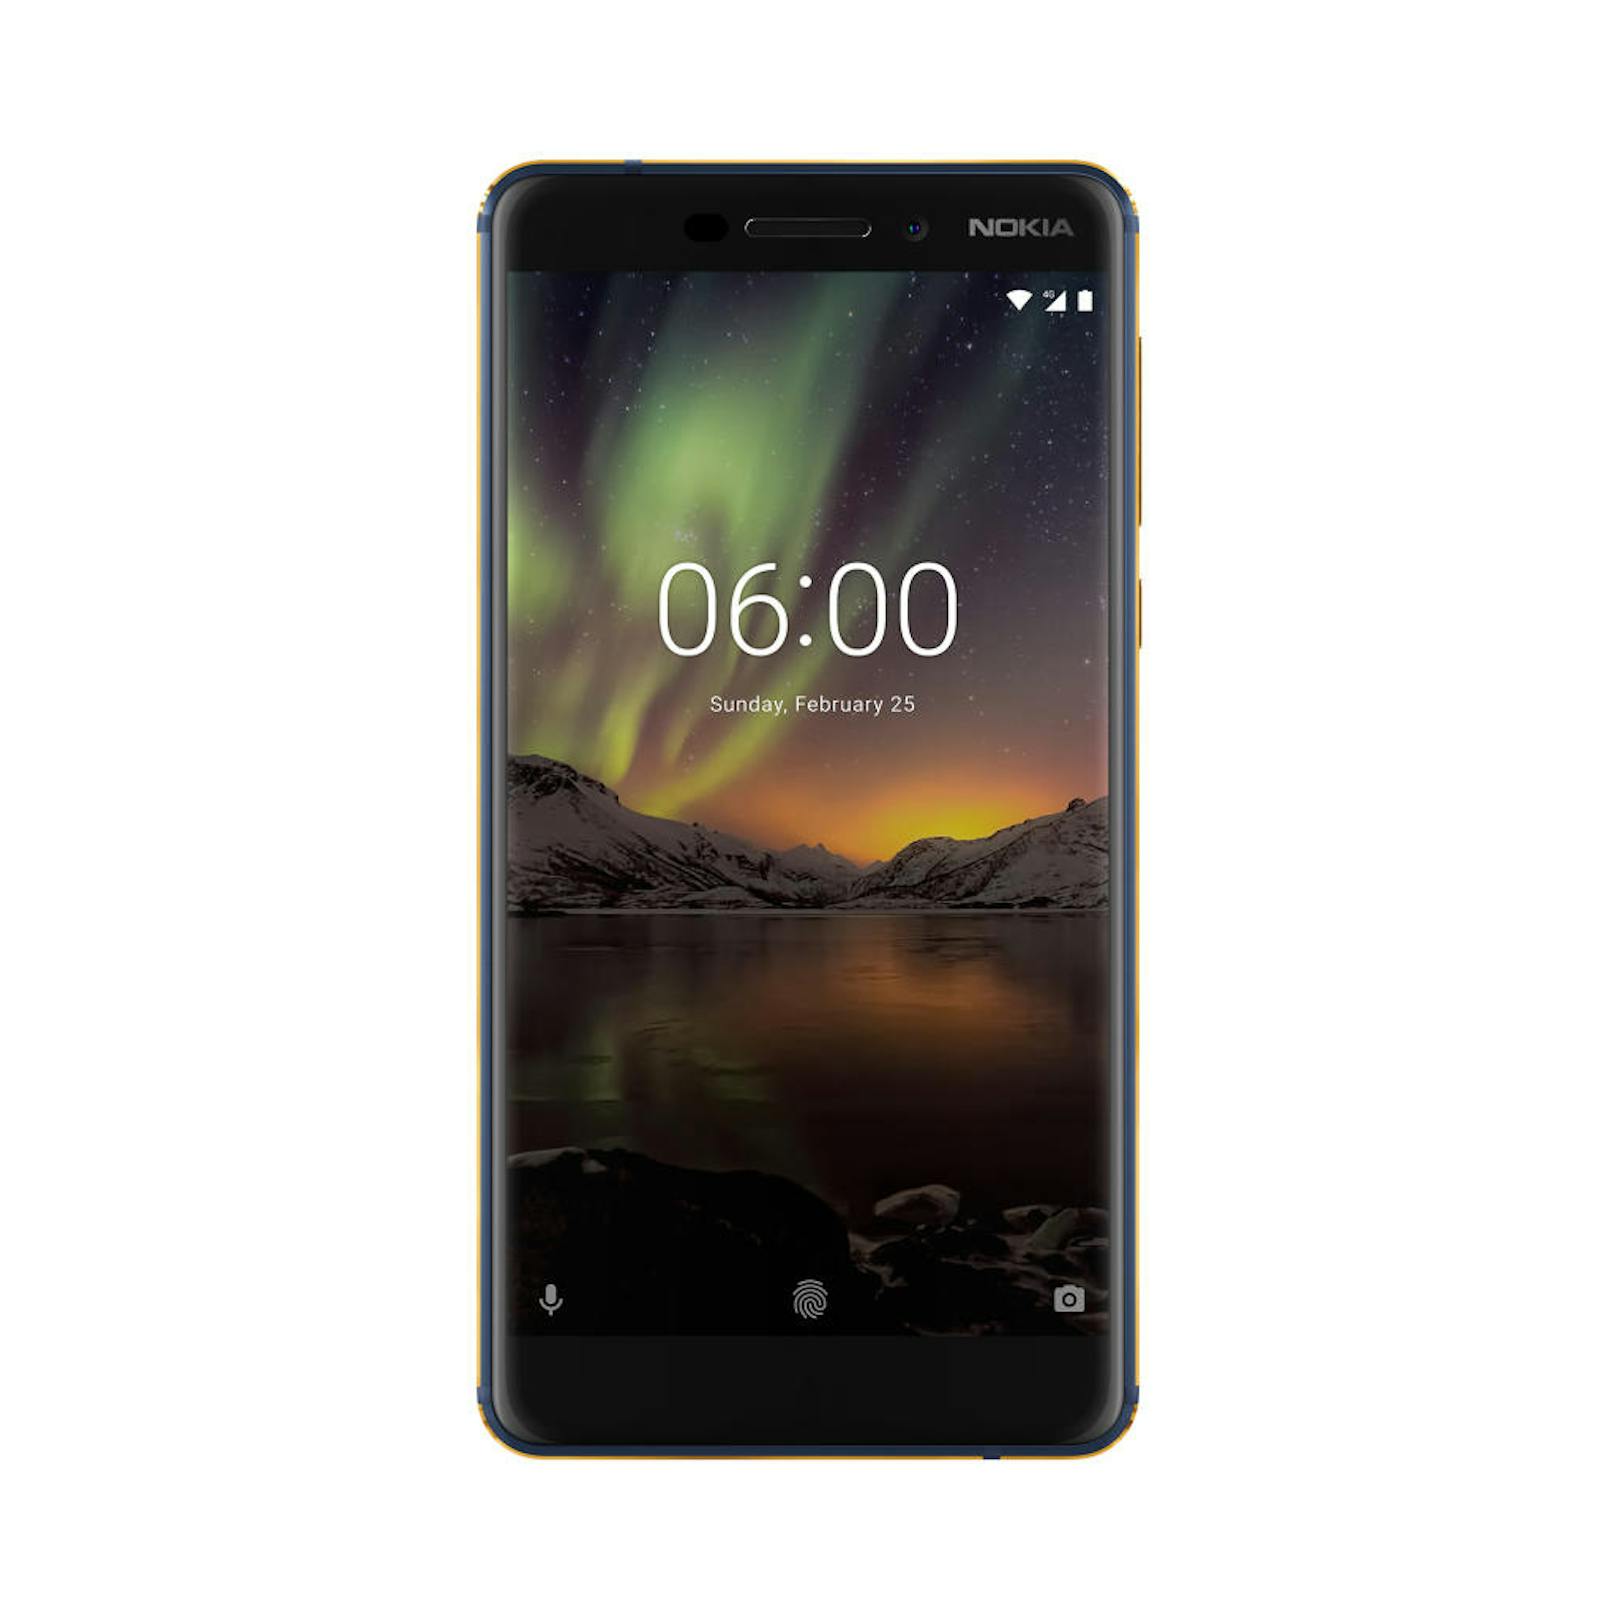 <b>16. Mai 2018:</b> Das neue Nokia 6 kommt nun auch nach Österreich. Ab sofort ist der Nachfolger des preisgekrönten Nokia 6 in der 4 GB RAM/64 GB ROM-Version zu einem Preis von 329 Euro erhältlich. Es bietet einen verbesserten Dual-Sight-Modus, ZEISS-Optik, USB-C-Schnellladung sowie ein kompakteres Bildschirm-zu-Körper-Verhältnis sowie Android Oreo. Eine 16MP-ZEISS-Hauptkamera mit Dual-Tone-Blitz und eine 8MP-Selfiekamera knipsen Bilder. Der 3000 mAh-Akku wird in nur 30 Minuten zu 50 Prozent aufgeladen. Angetrieben wird das Ganze durch die Qualcomm Snapdragon 630 Mobile Platform. 